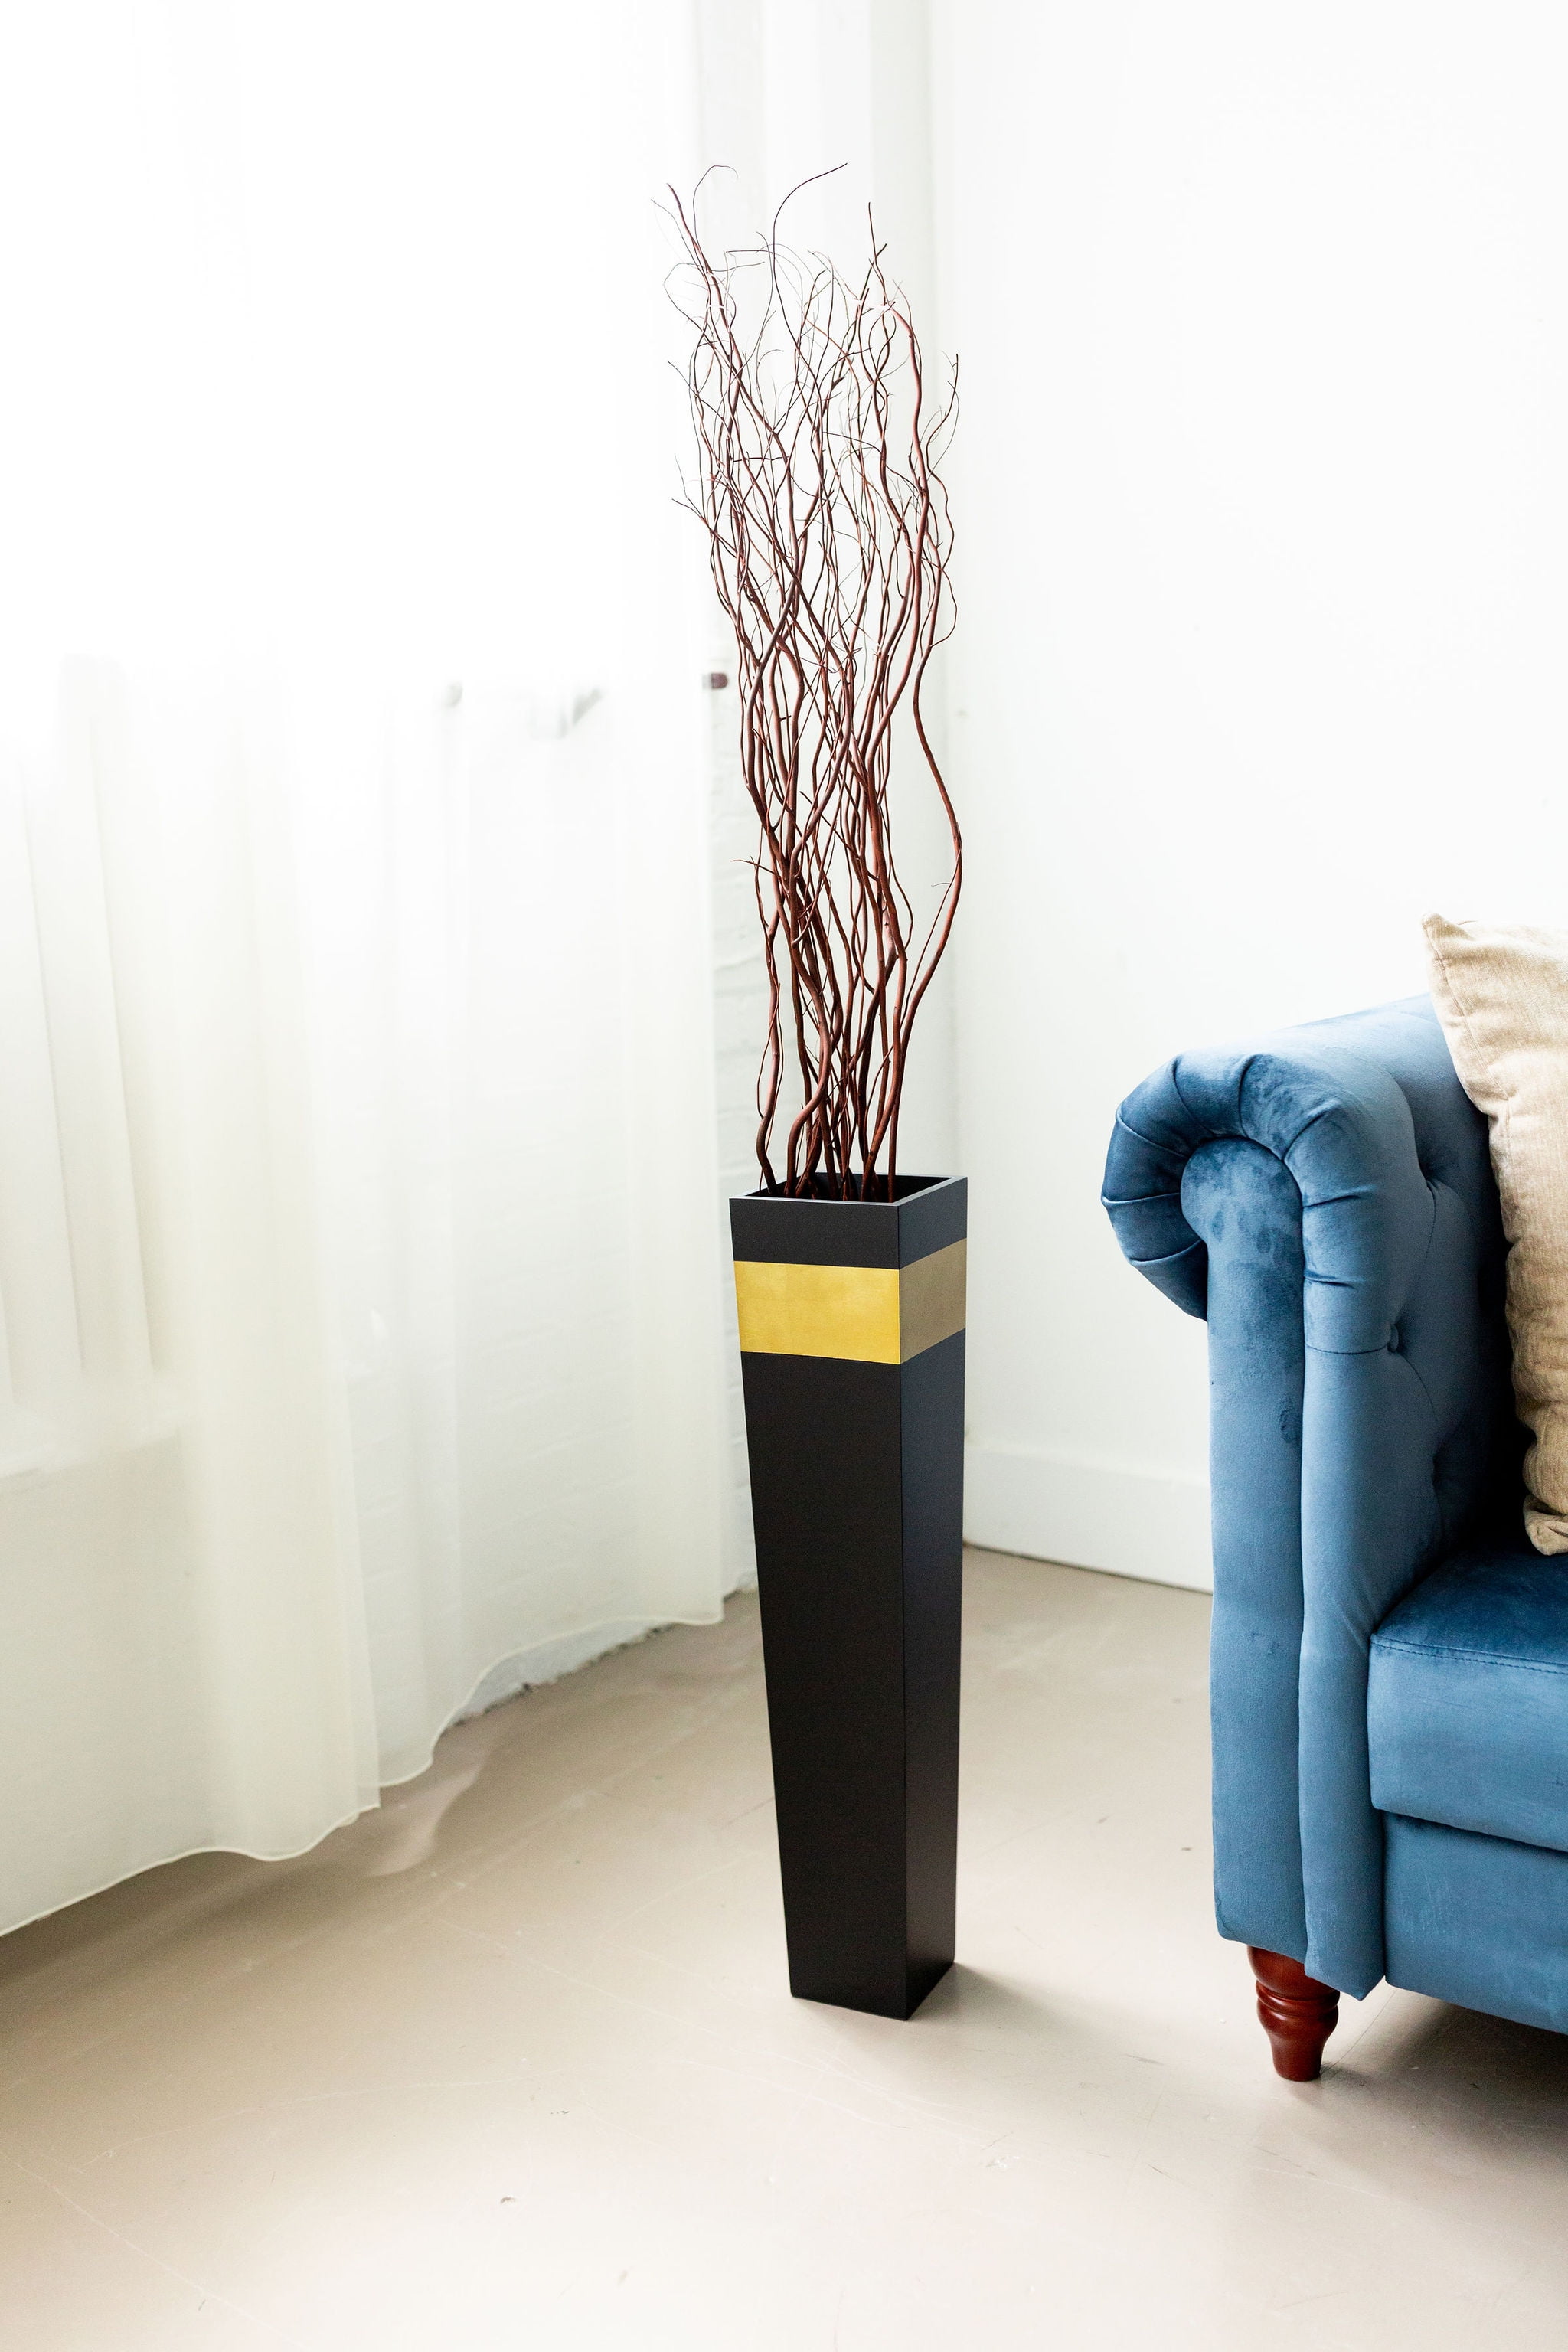 2PC Decorative Ceramic Tall Vase Modern Elegant Floor Flower Vase for Home Decor